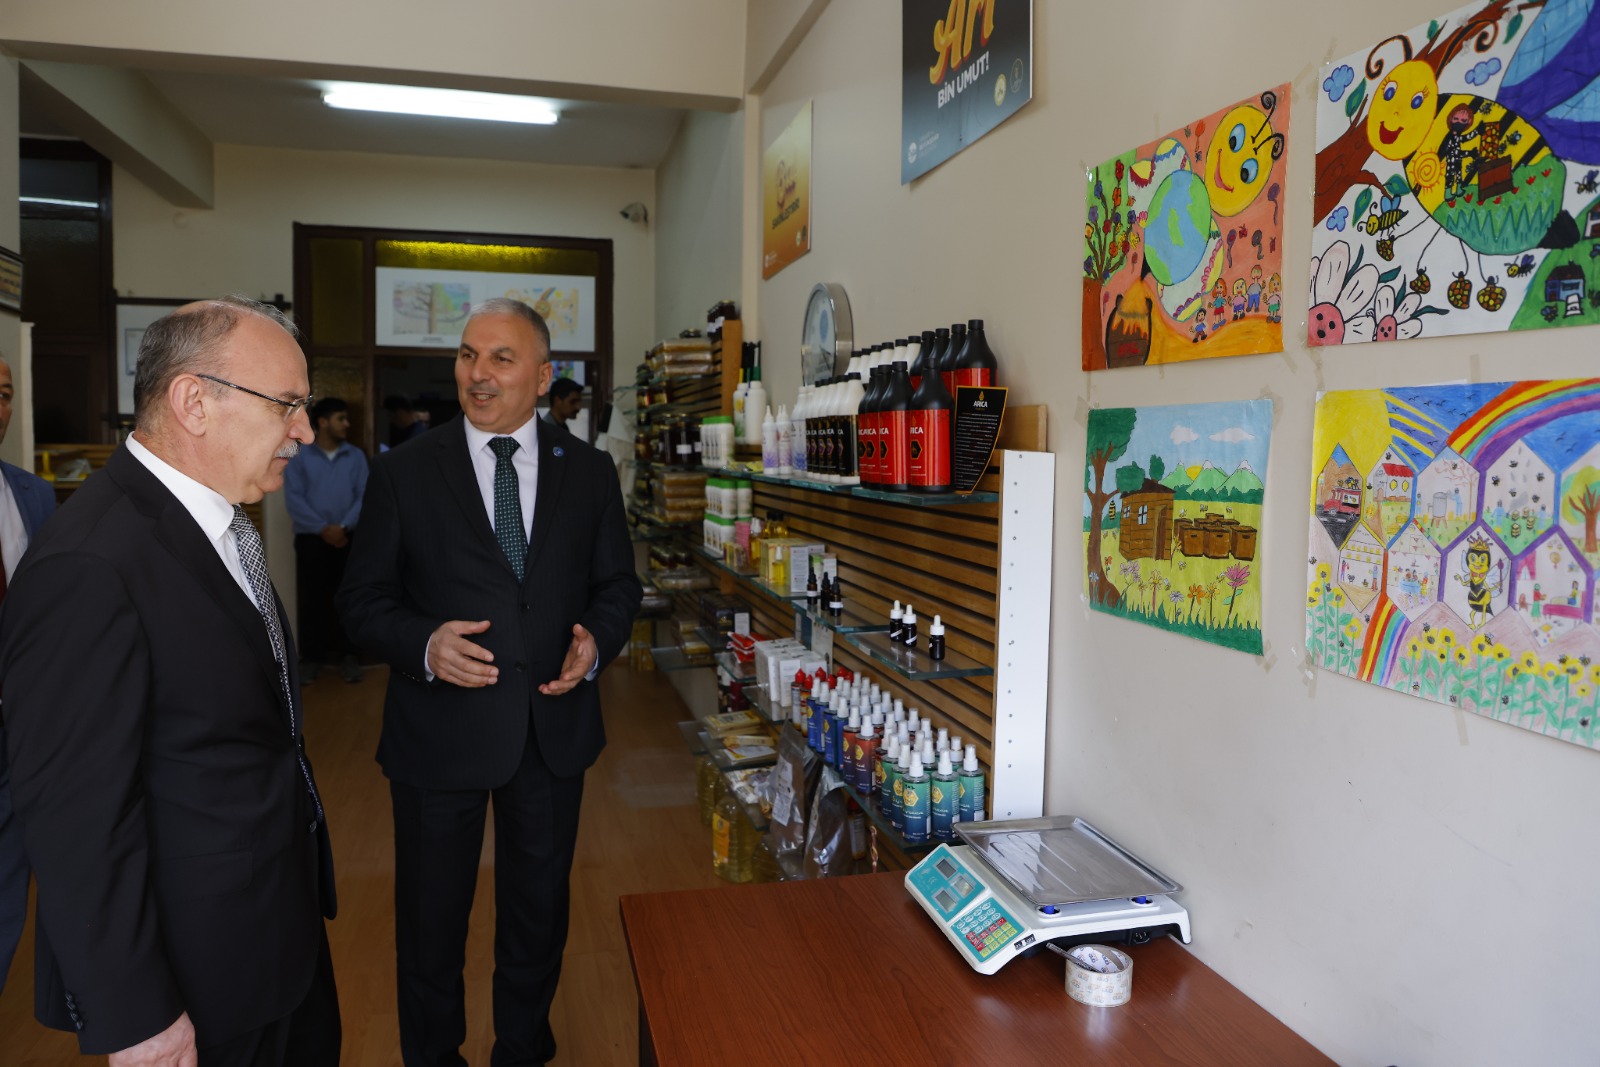 Sakarya Valisi Yaşar Karadeniz Arıcılar Birliği Başkanı Mustafa Ör'ü ziyaret etti.